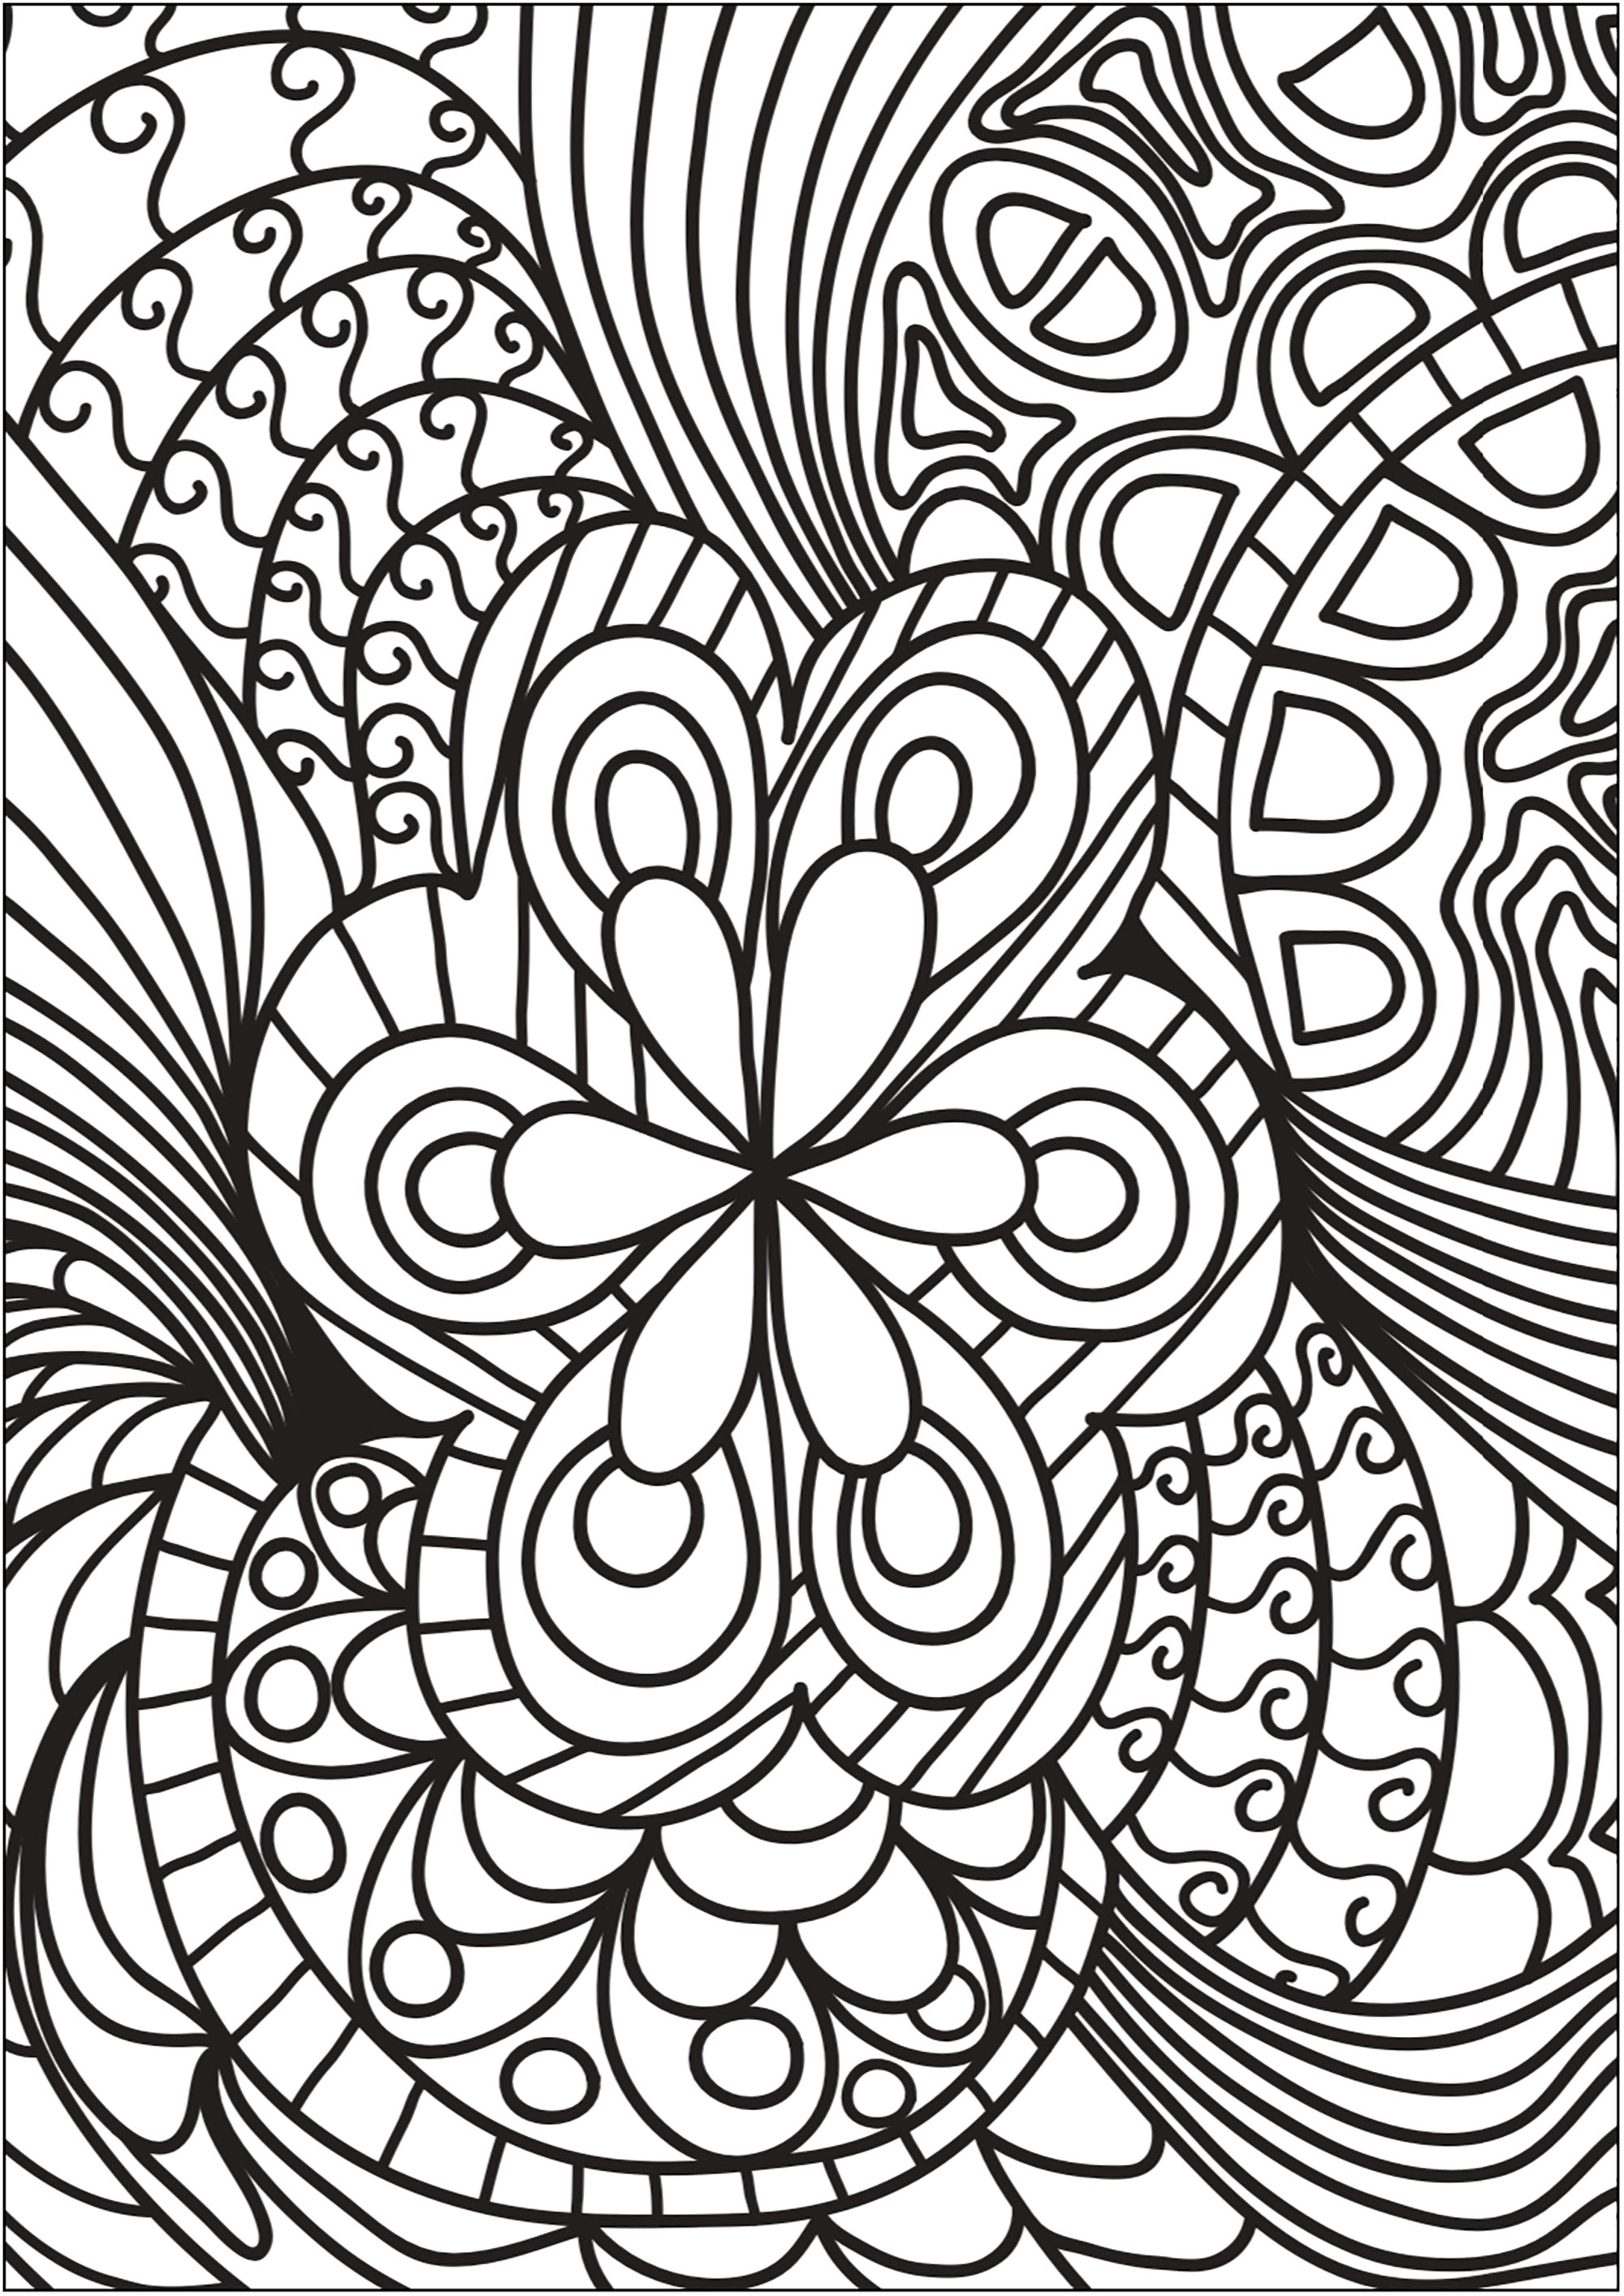 Joli Doodle composée d'une fleur centrale et de belles formes l'entourant. Commencez par colorier la fleur puis laissez-vous emporter dans un tourbillon de formes et de couleurs